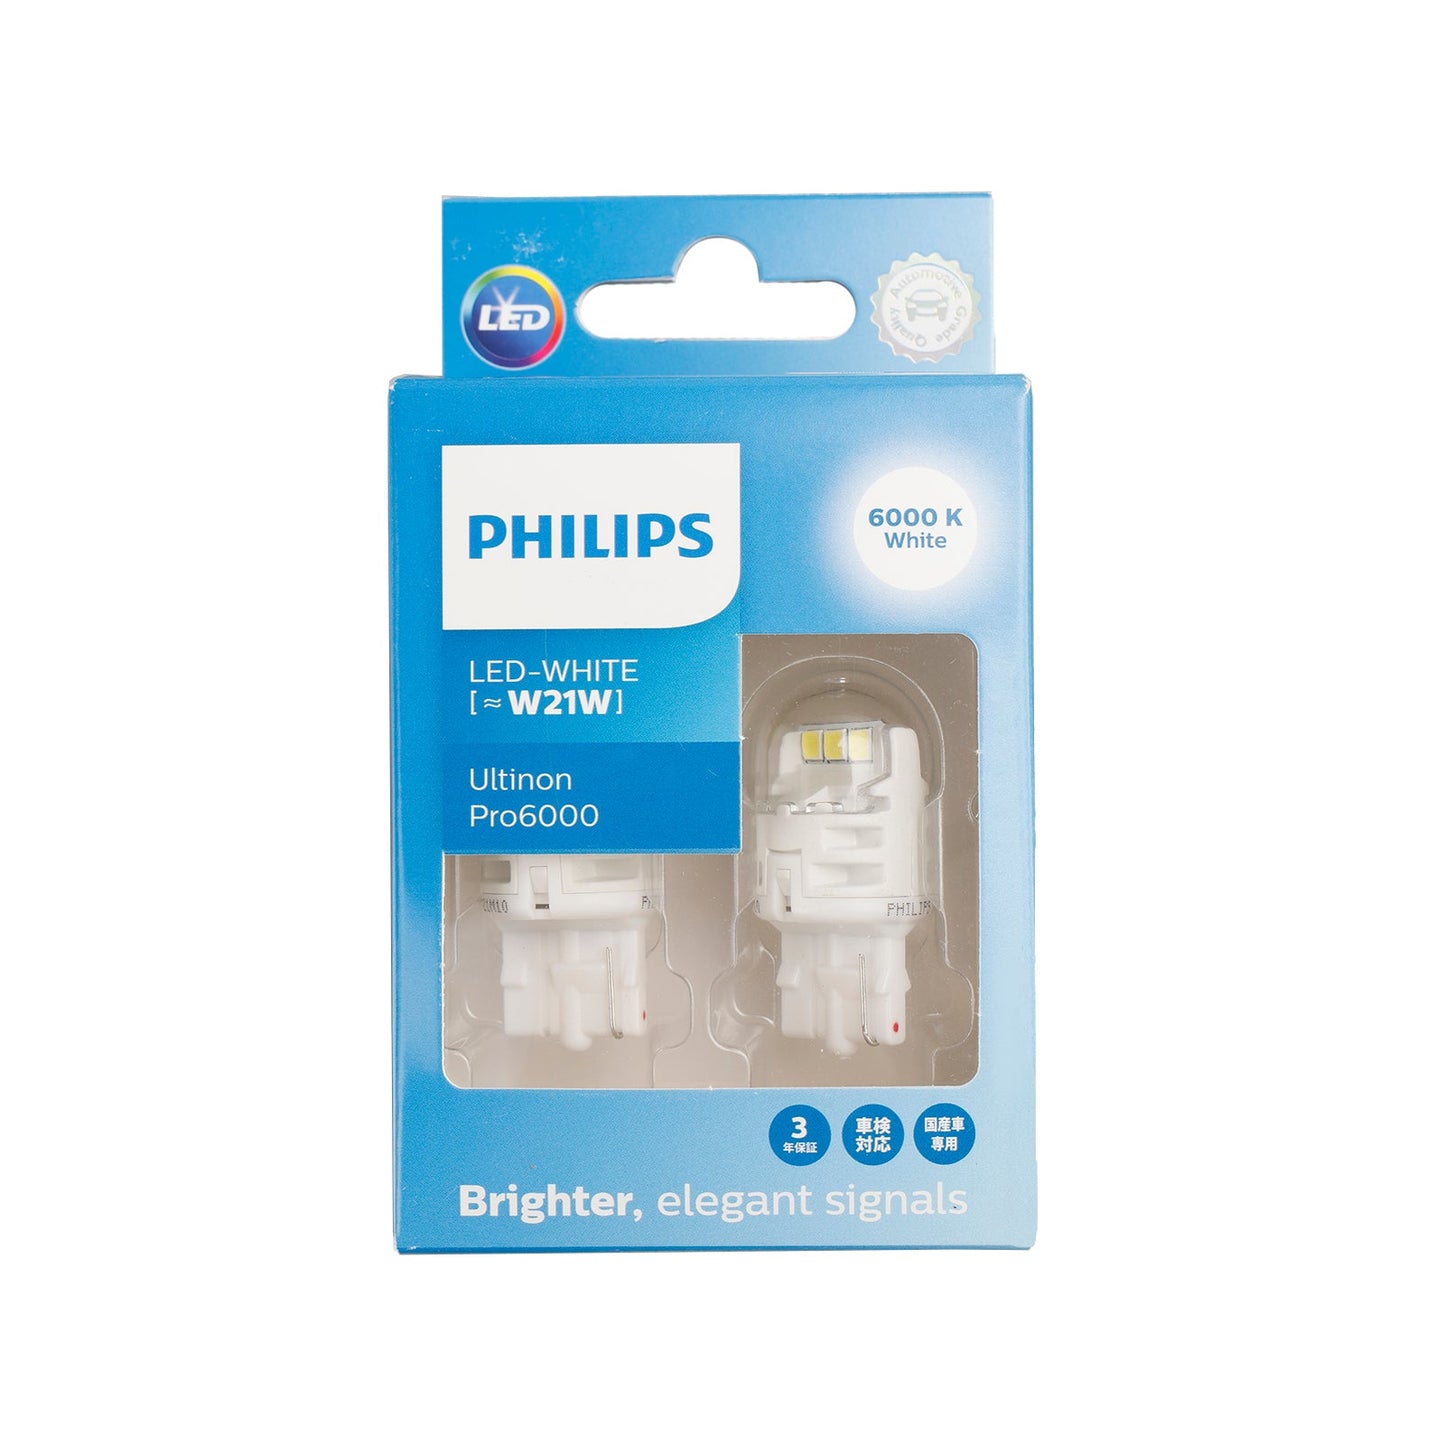 Für Philips 11065CU60X2 Ultinon Pro6000 LED-WEISS W21W 6000K 250lm